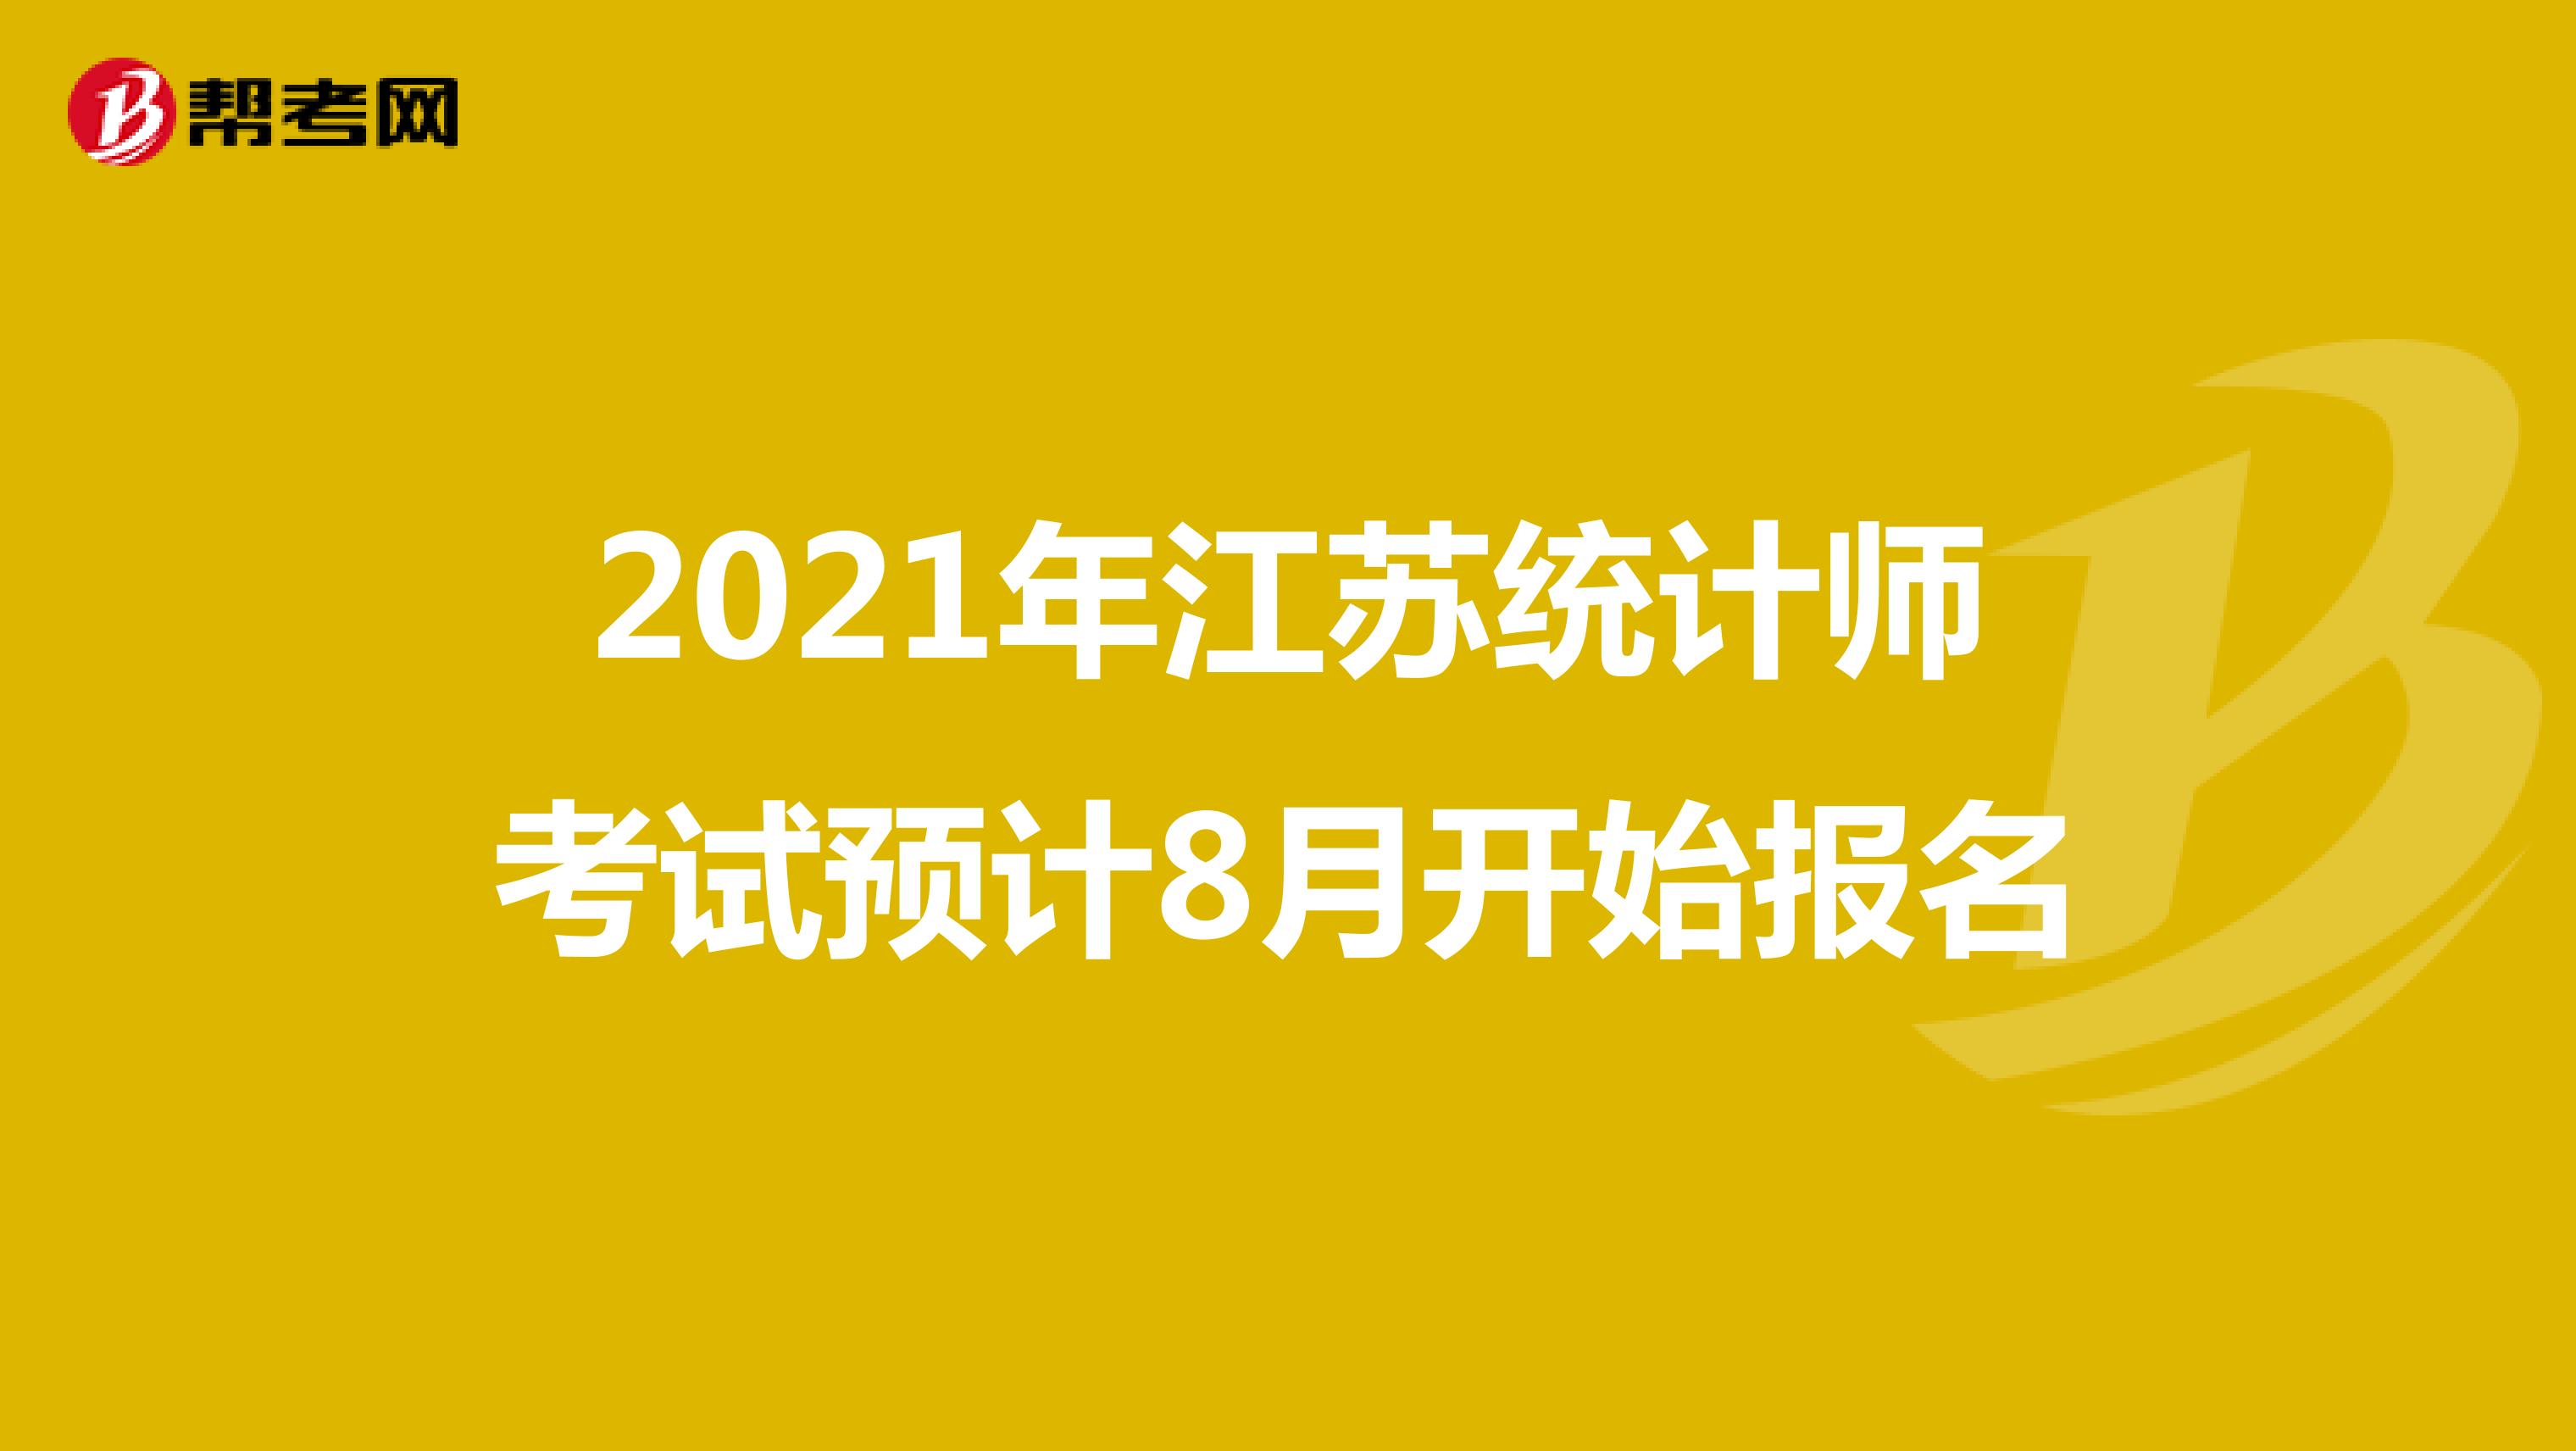 2021年江苏统计师考试预计8月开始报名